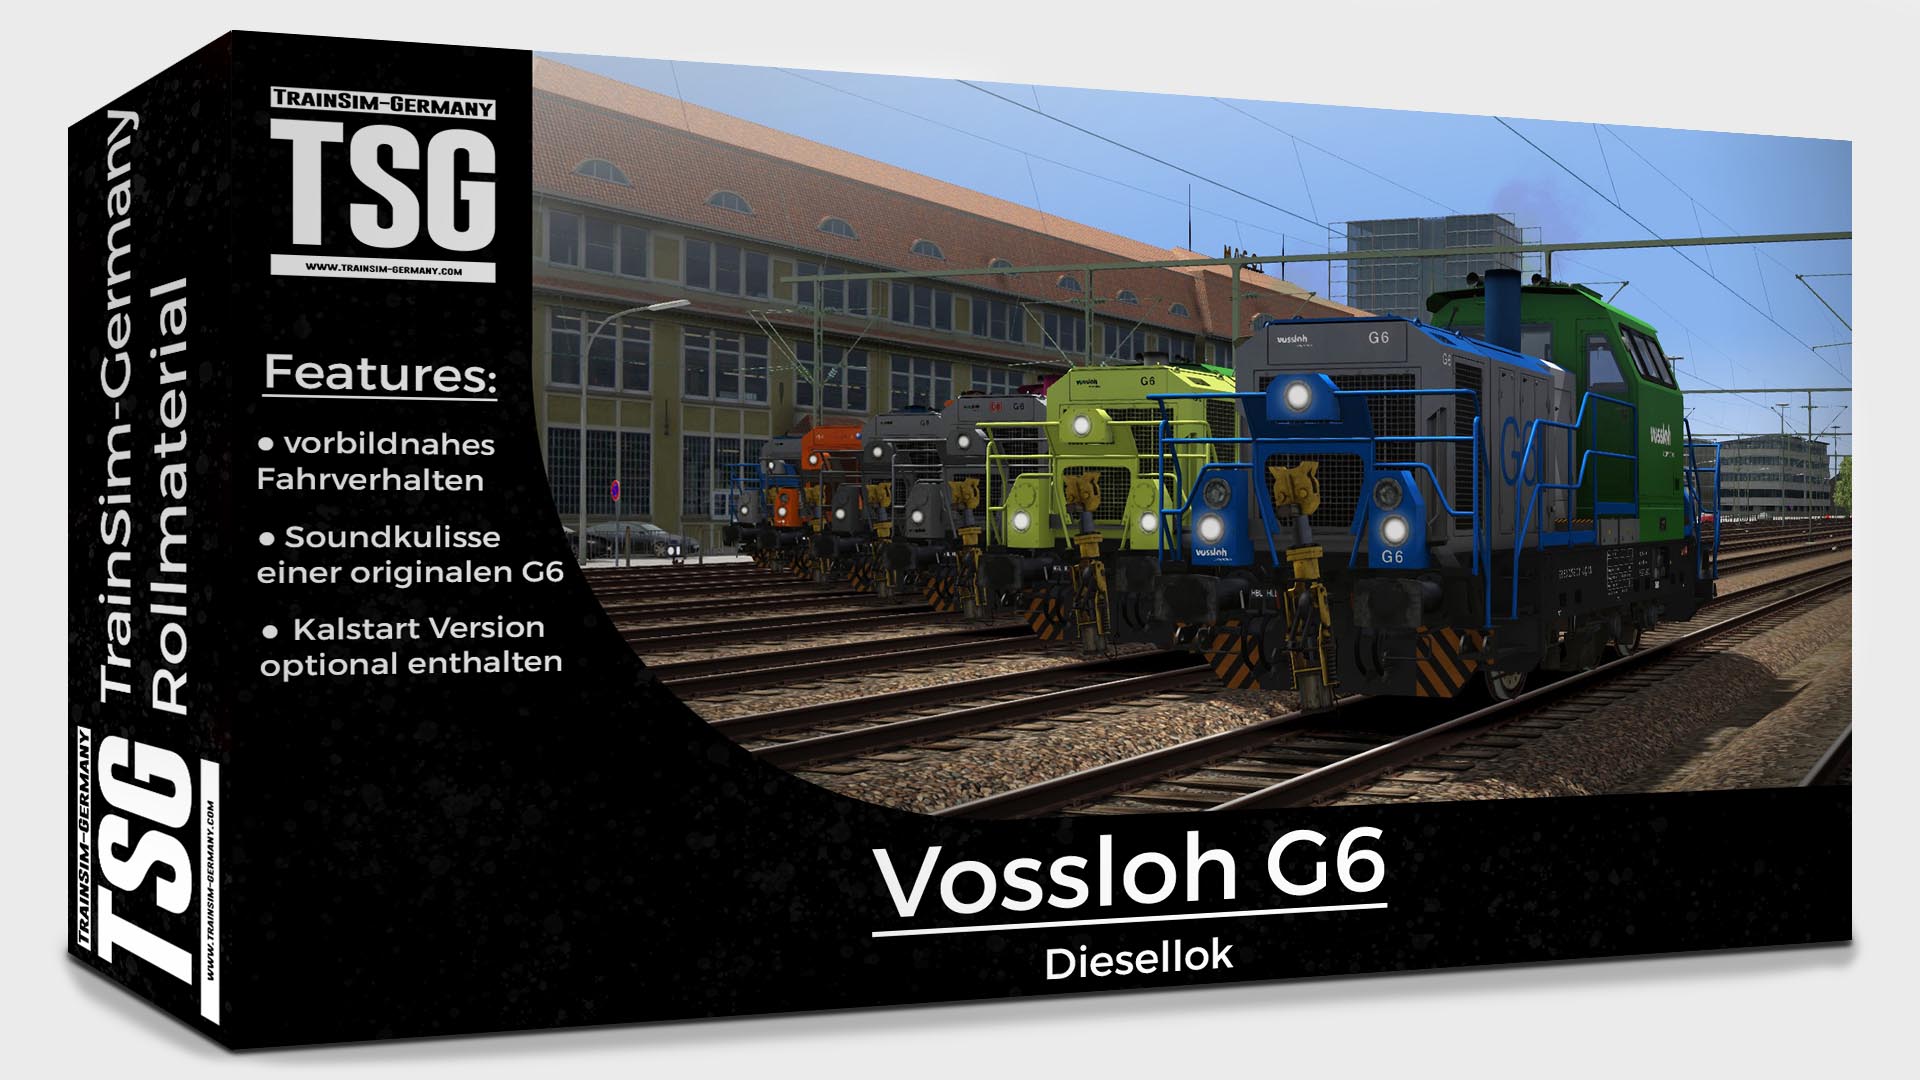 TSG Vossloh G6 